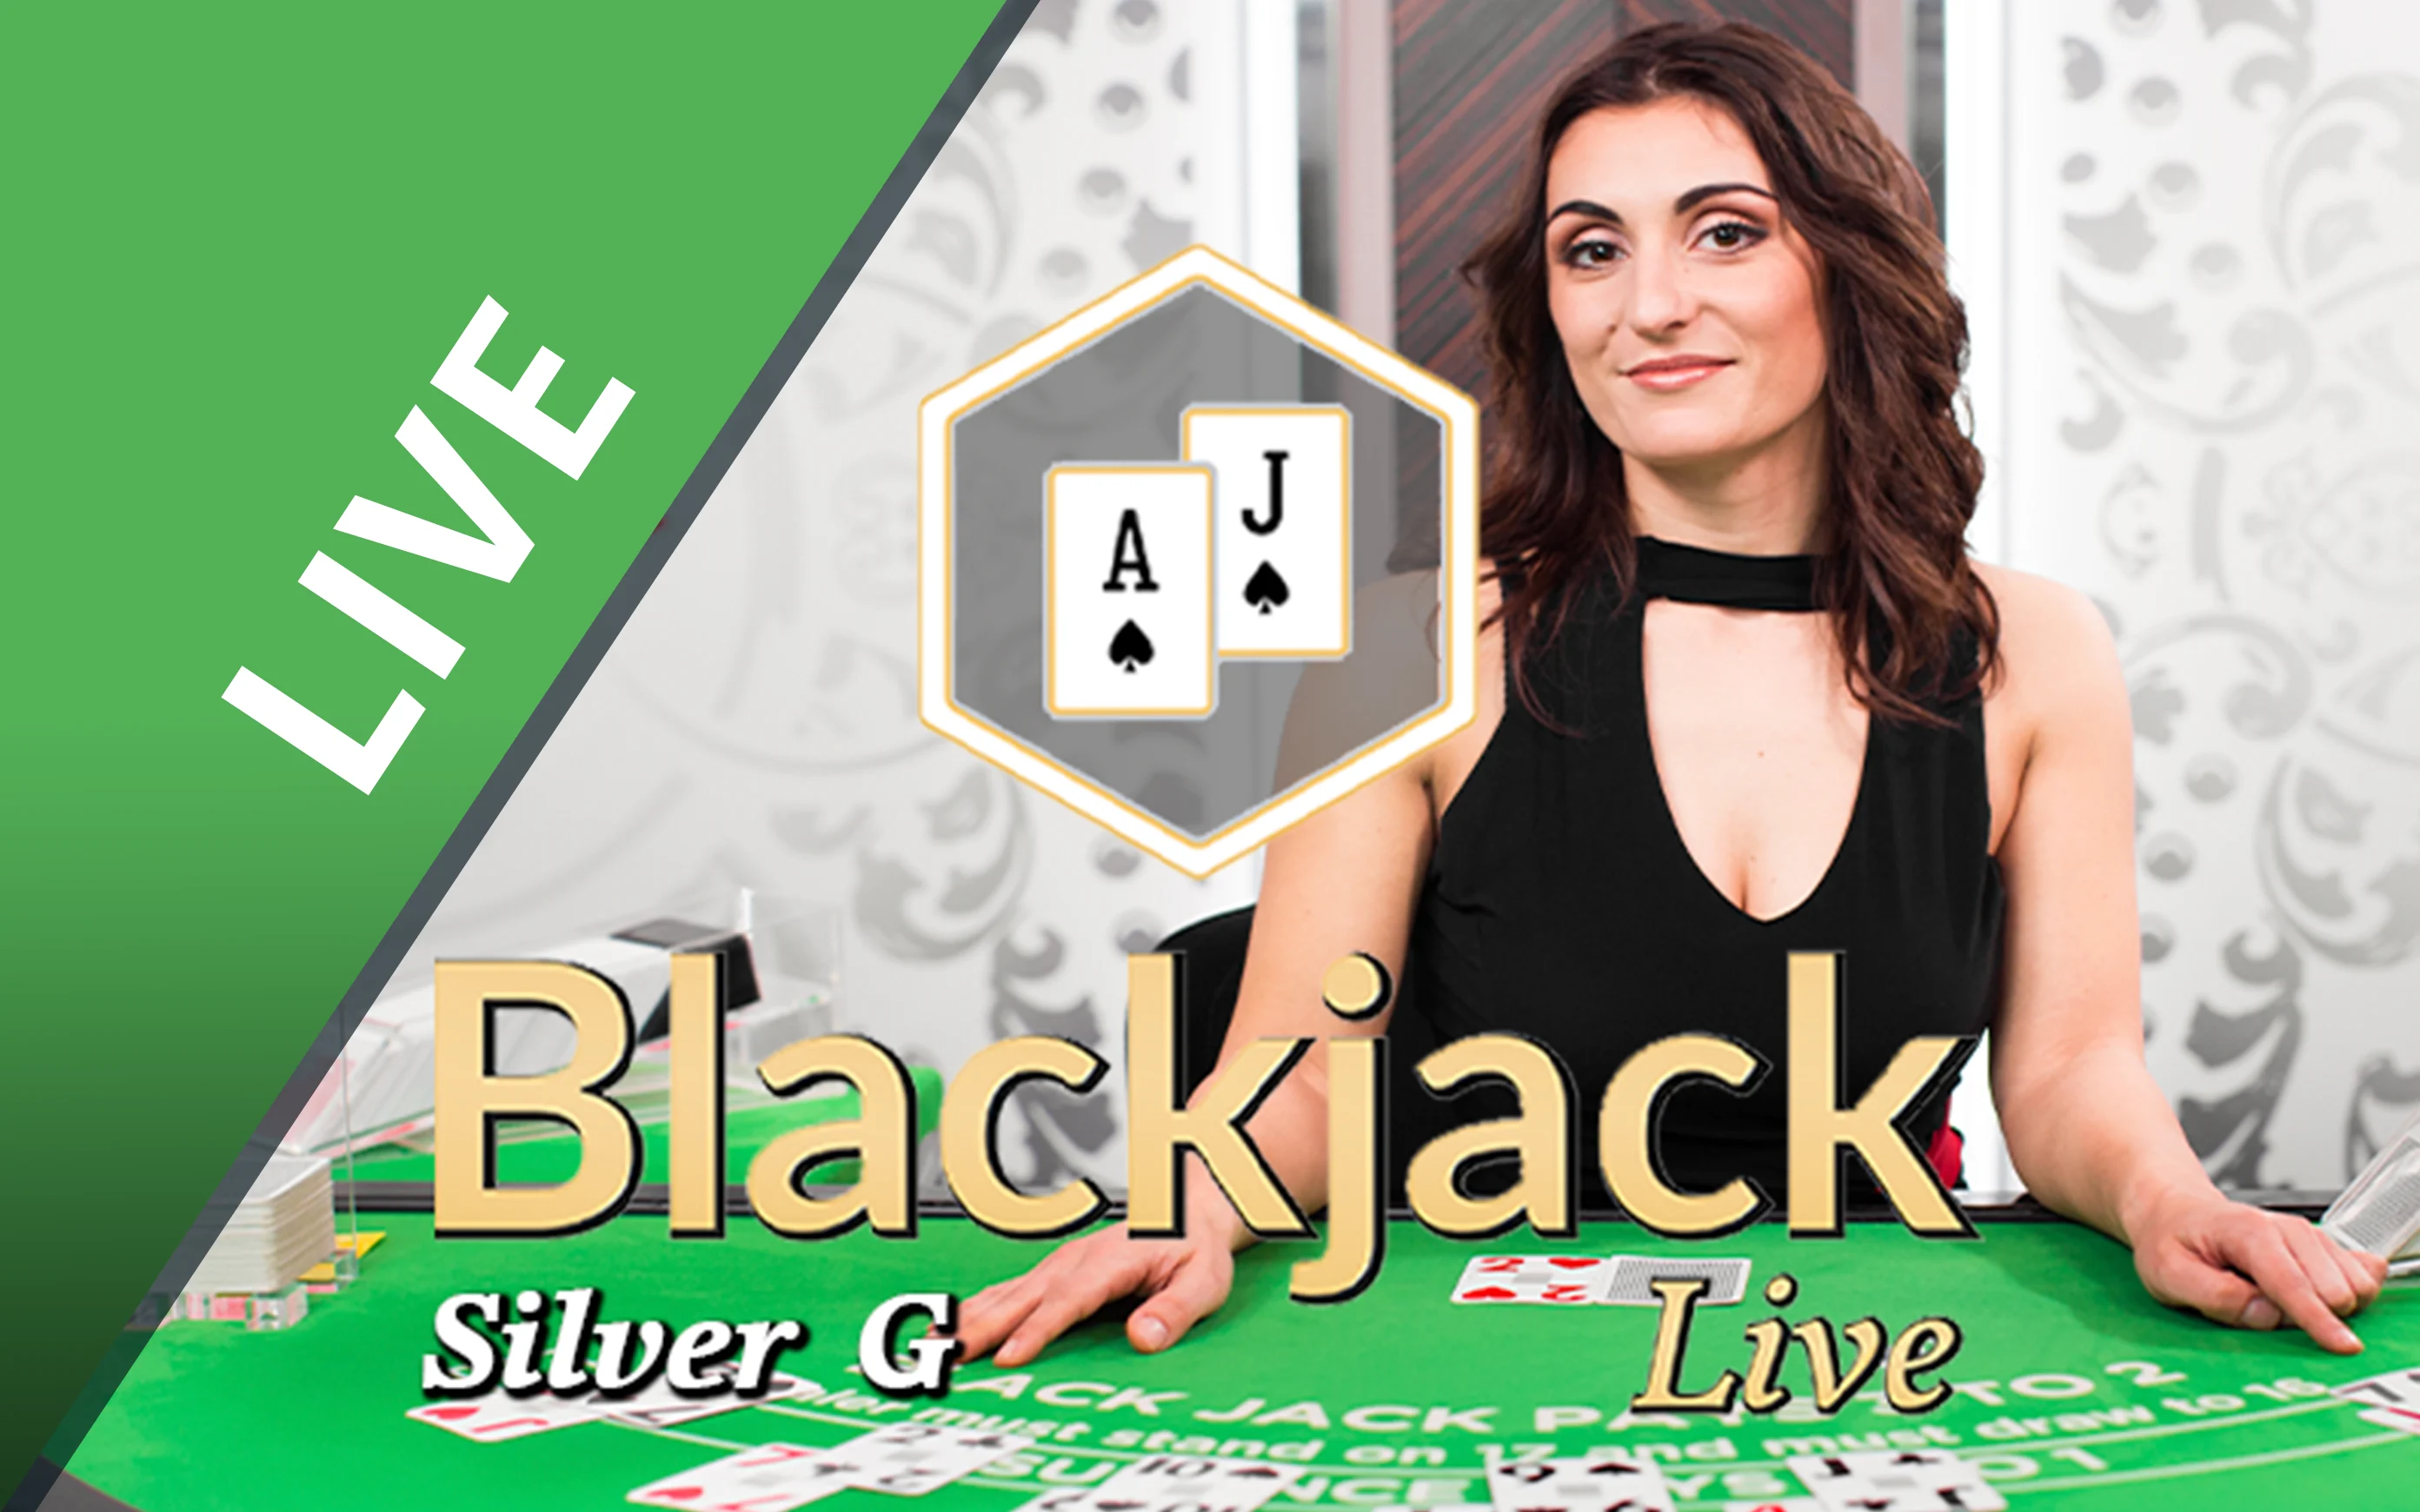 Chơi Blackjack Silver G trên sòng bạc trực tuyến Starcasino.be